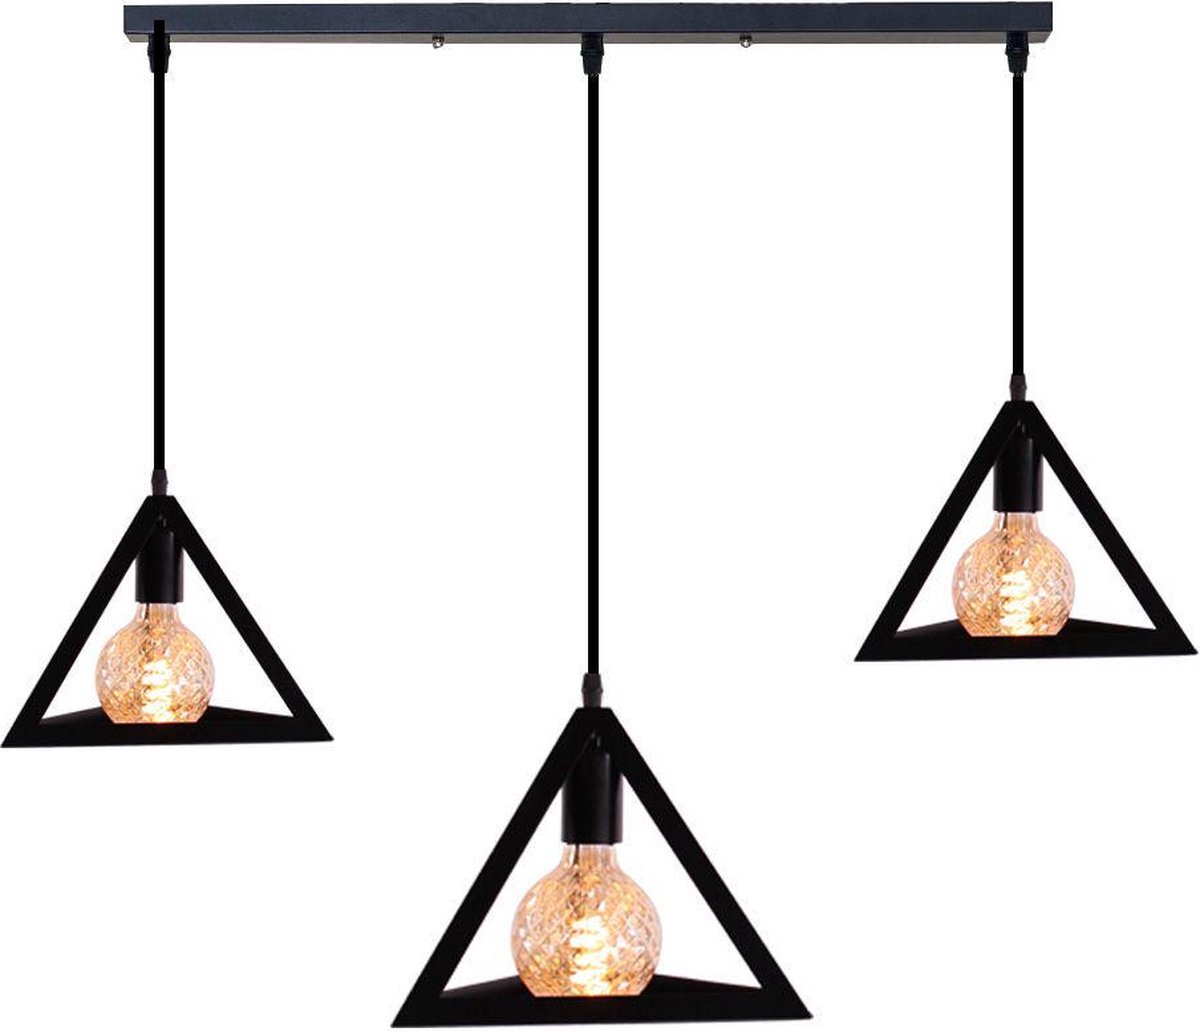 Homestyle Pro Zwarte hanglamp met 3 lichtpunten - Pyramide - kamerlamp - Plafondlamp - Keukenlamp - Bevestigingsstang 50 cm - Zwart - Metaal - Industrieel - in lengte verstelbaar - E27 - 240V - zonder lichtbron